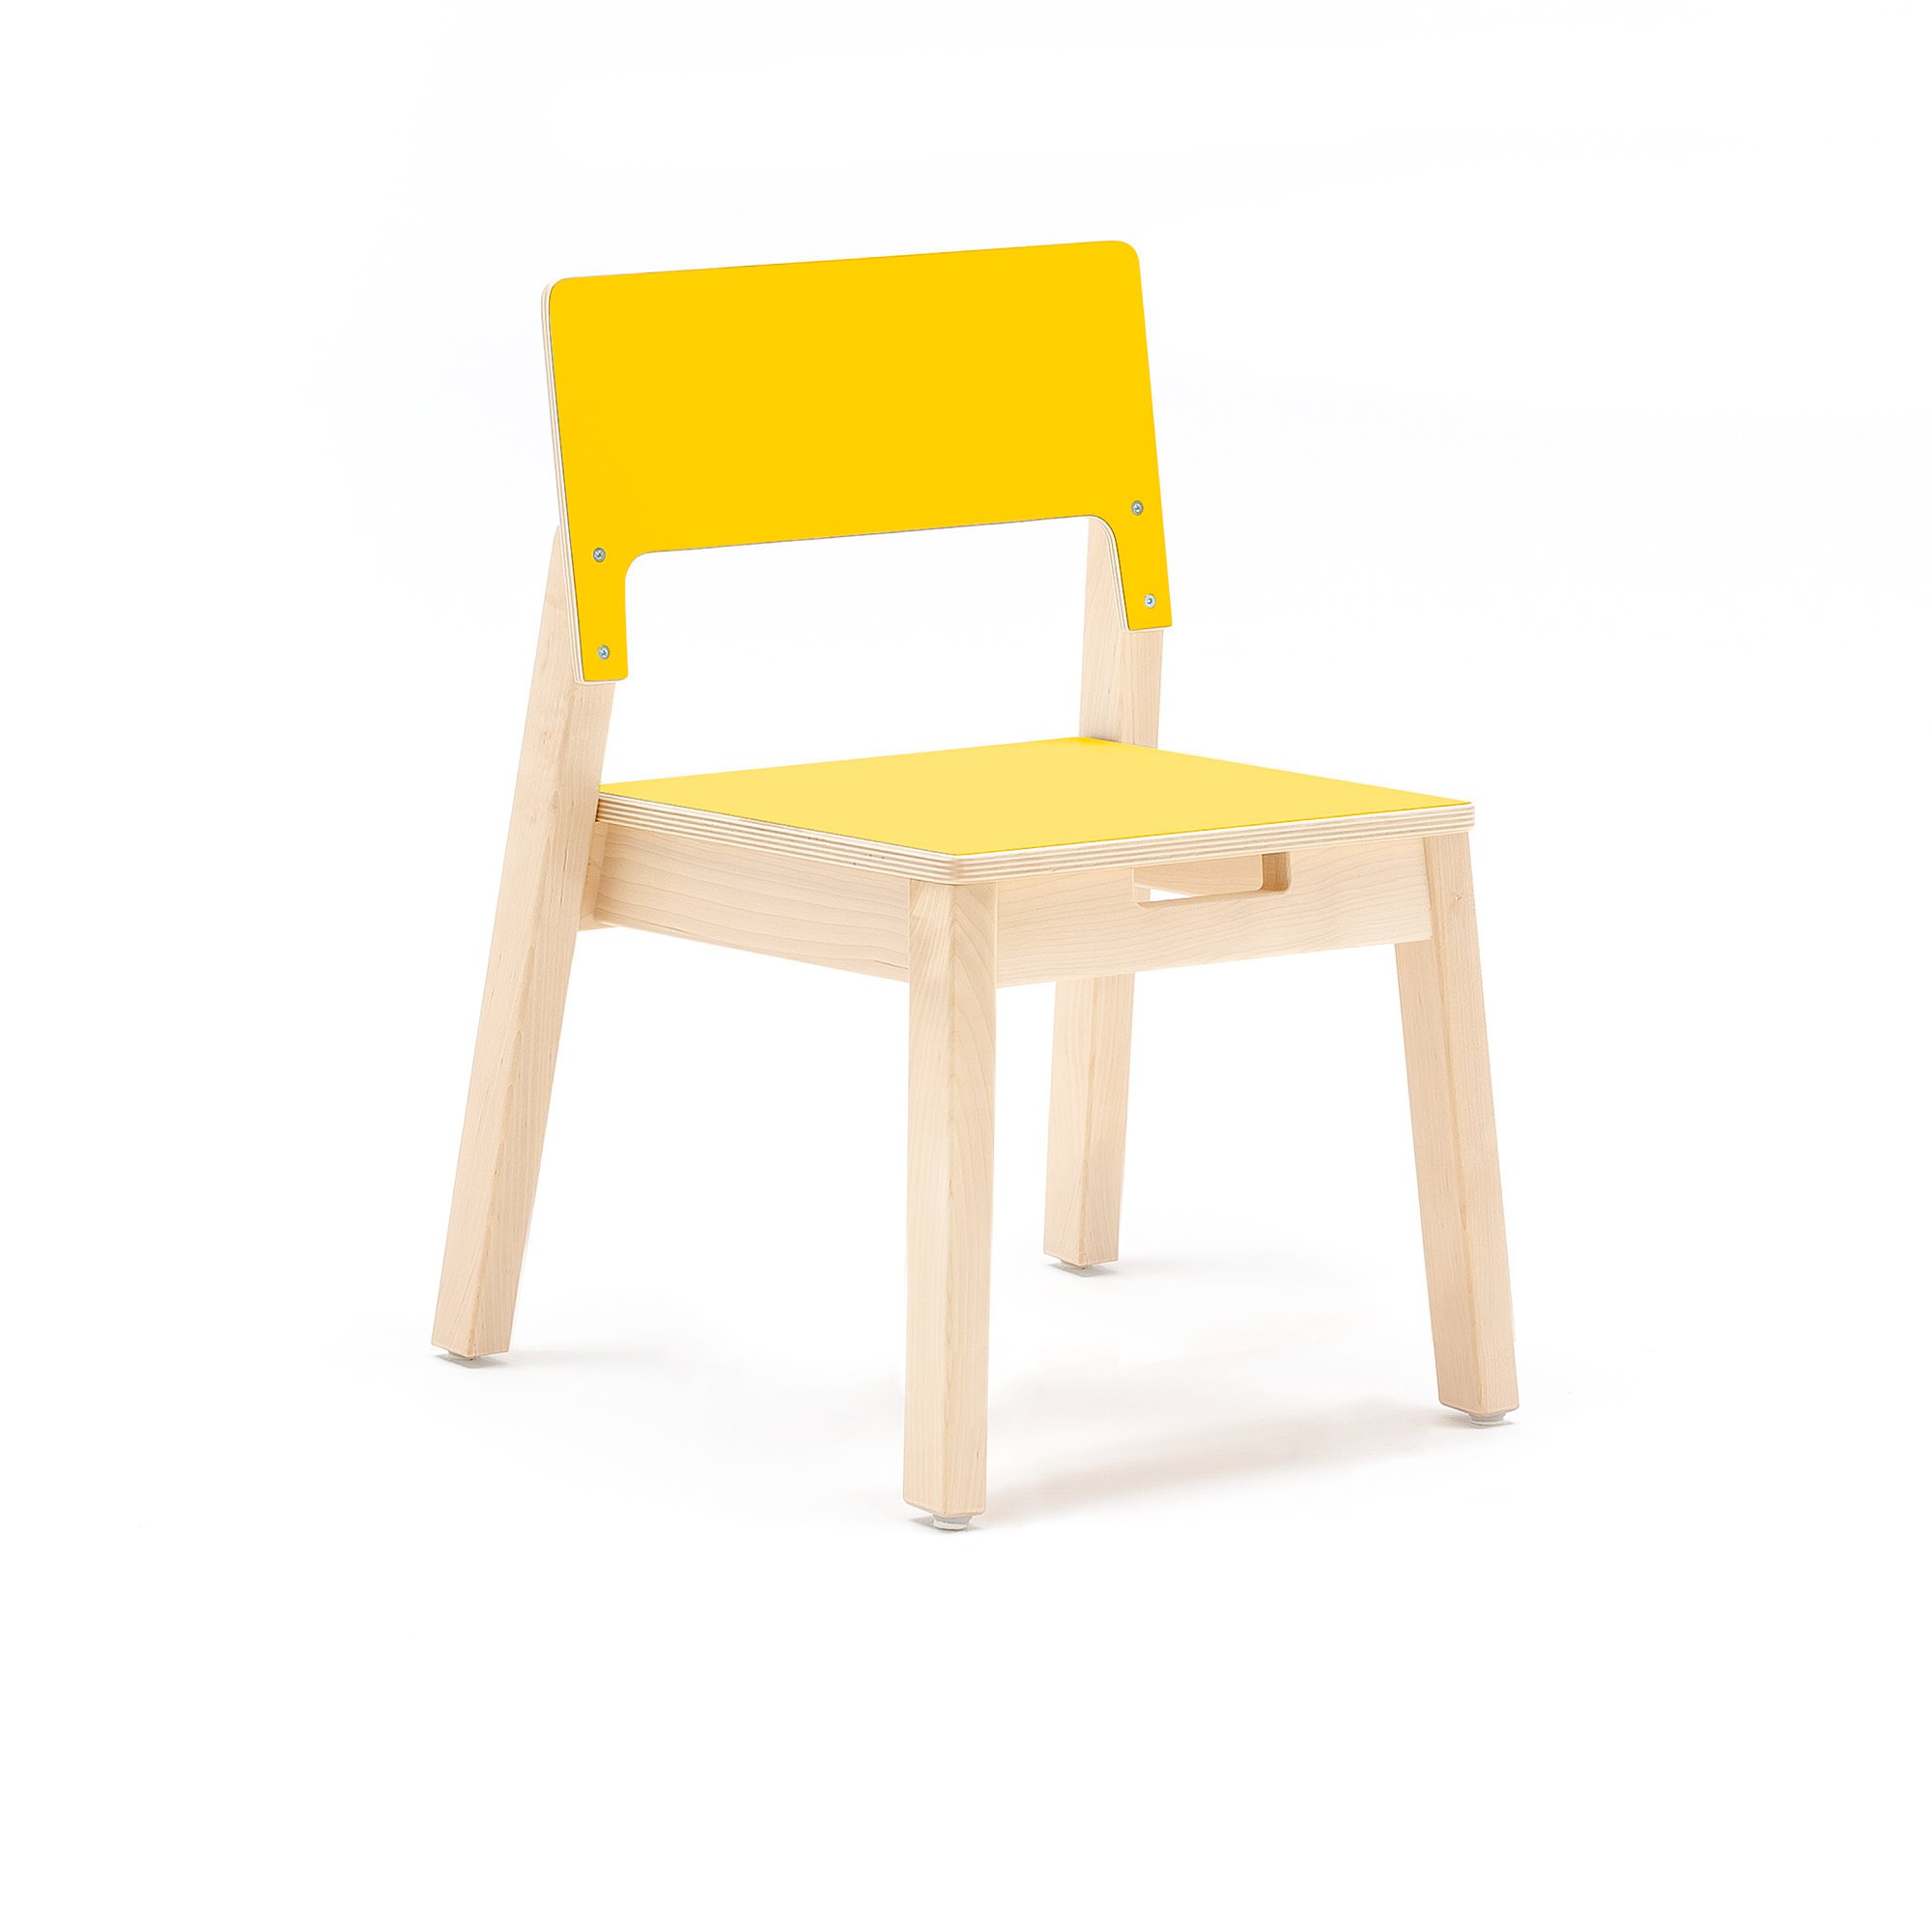 Children's chair LOVE, H 350 mm, birch, yellow laminate